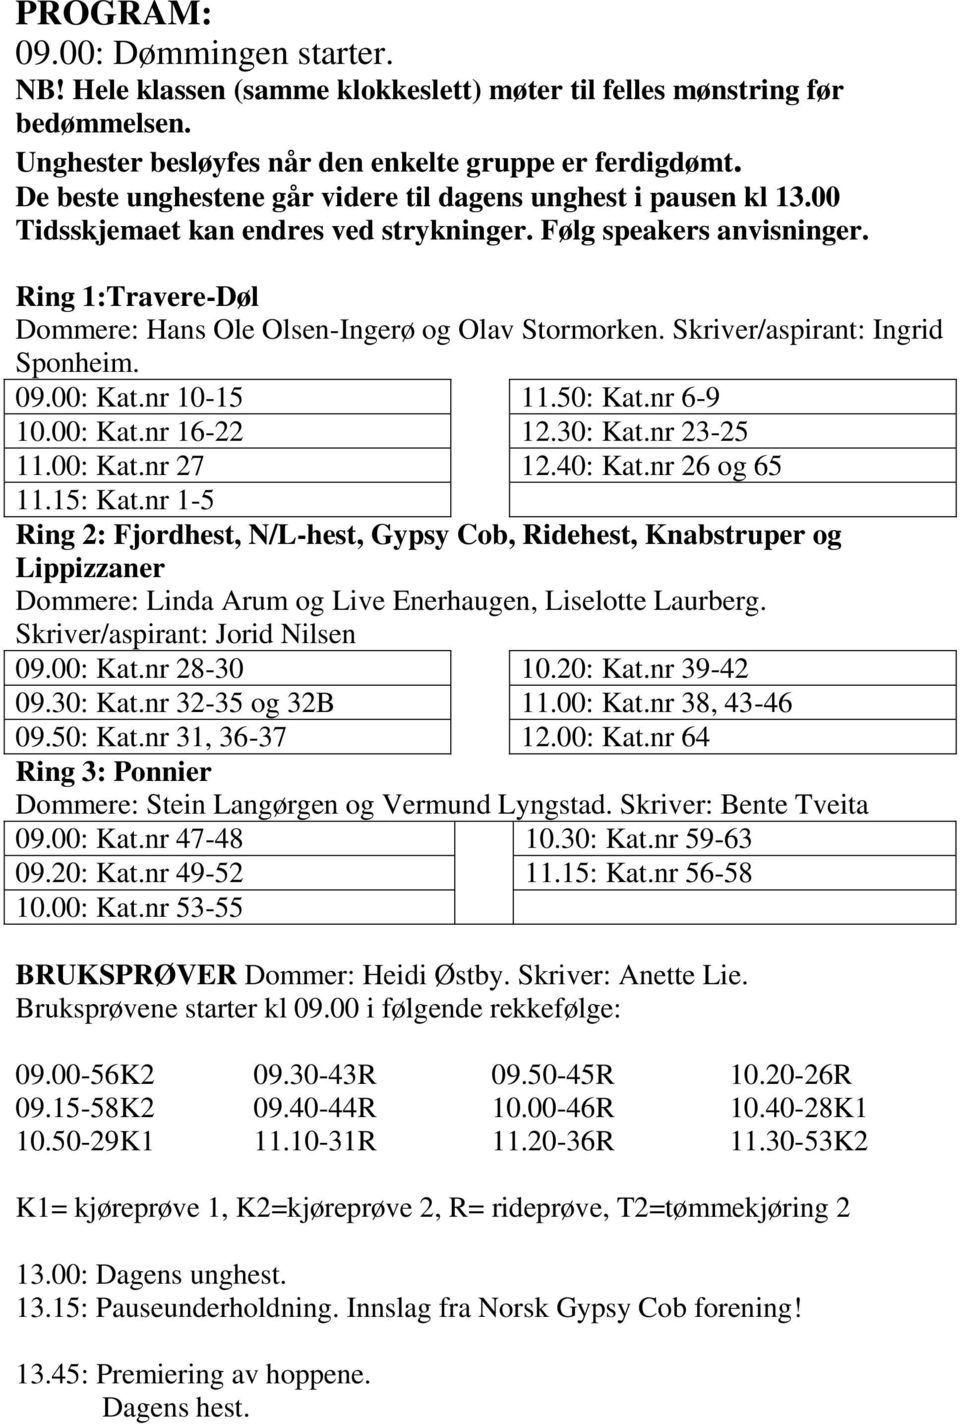 Ring 1:Travere-Døl Dommere: Hans Ole Olsen-Ingerø og Olav Stormorken. Skriver/aspirant: Ingrid Sponheim. 09.00: Kat.nr 10-15 10.00: Kat.nr 16-22 11.00: Kat.nr 27 11.15: Kat.nr 1-5 11.50: Kat.